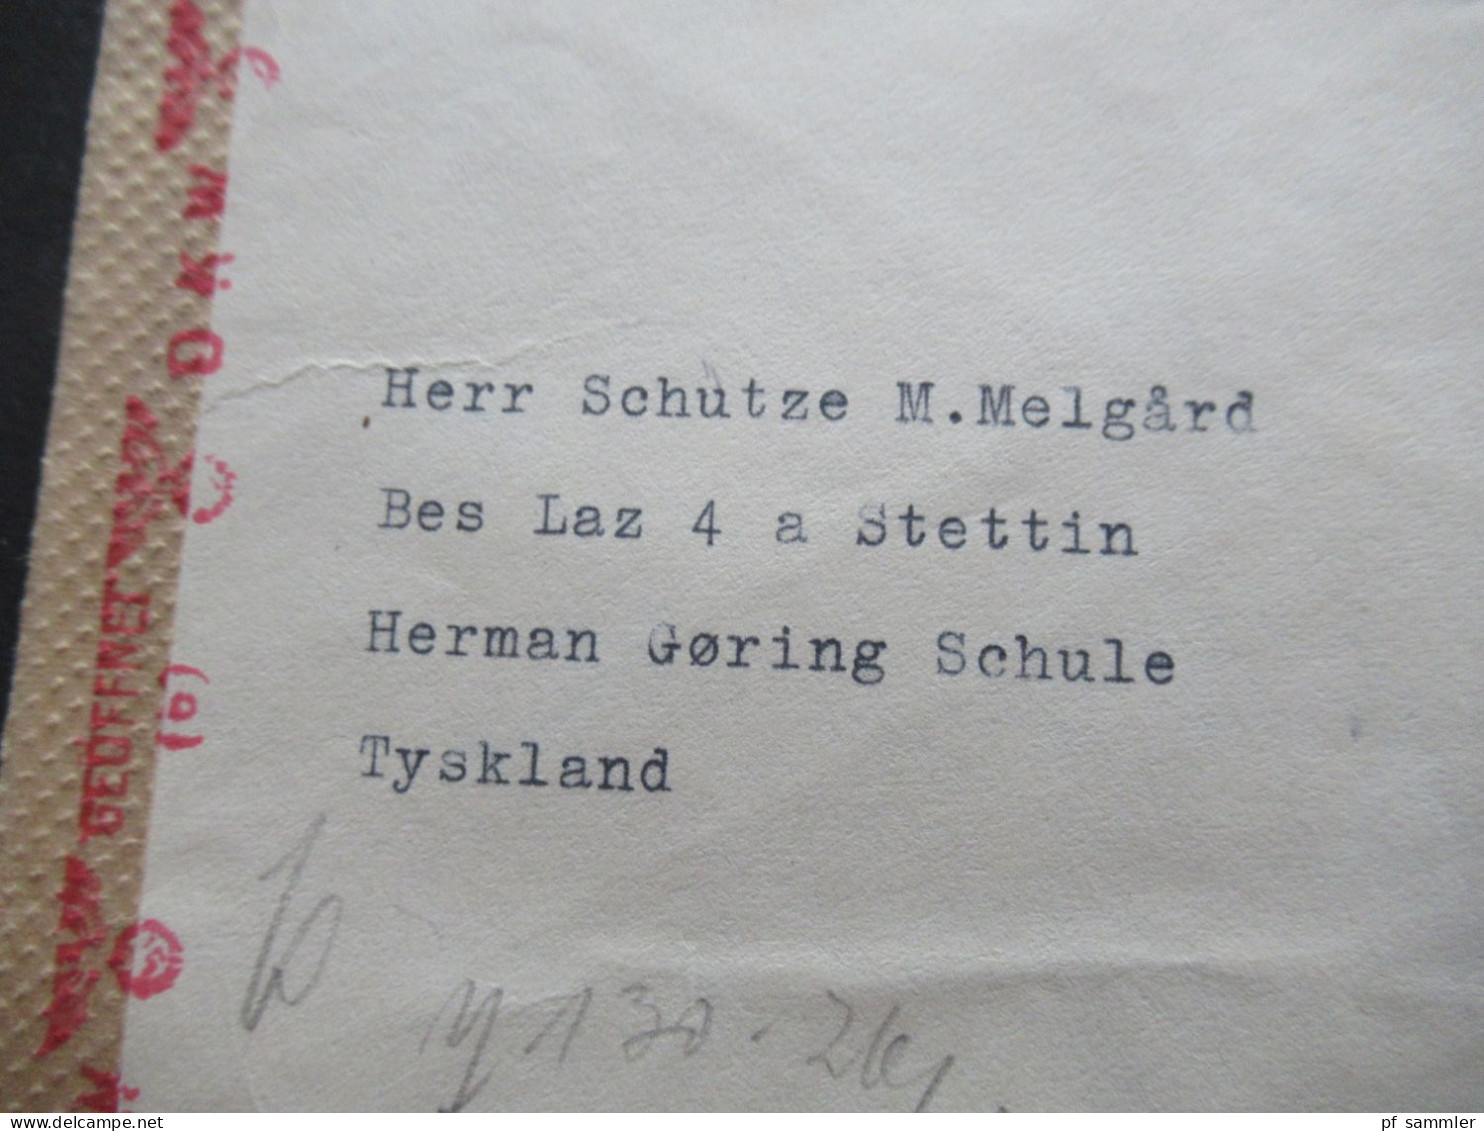 Norwegen 1942 POW Kriegsgefangenenpost Zensurstreifen OKW Zensur Skarnes - Res.Lazarett IV Stettin Hermann Göring Schule - Lettres & Documents